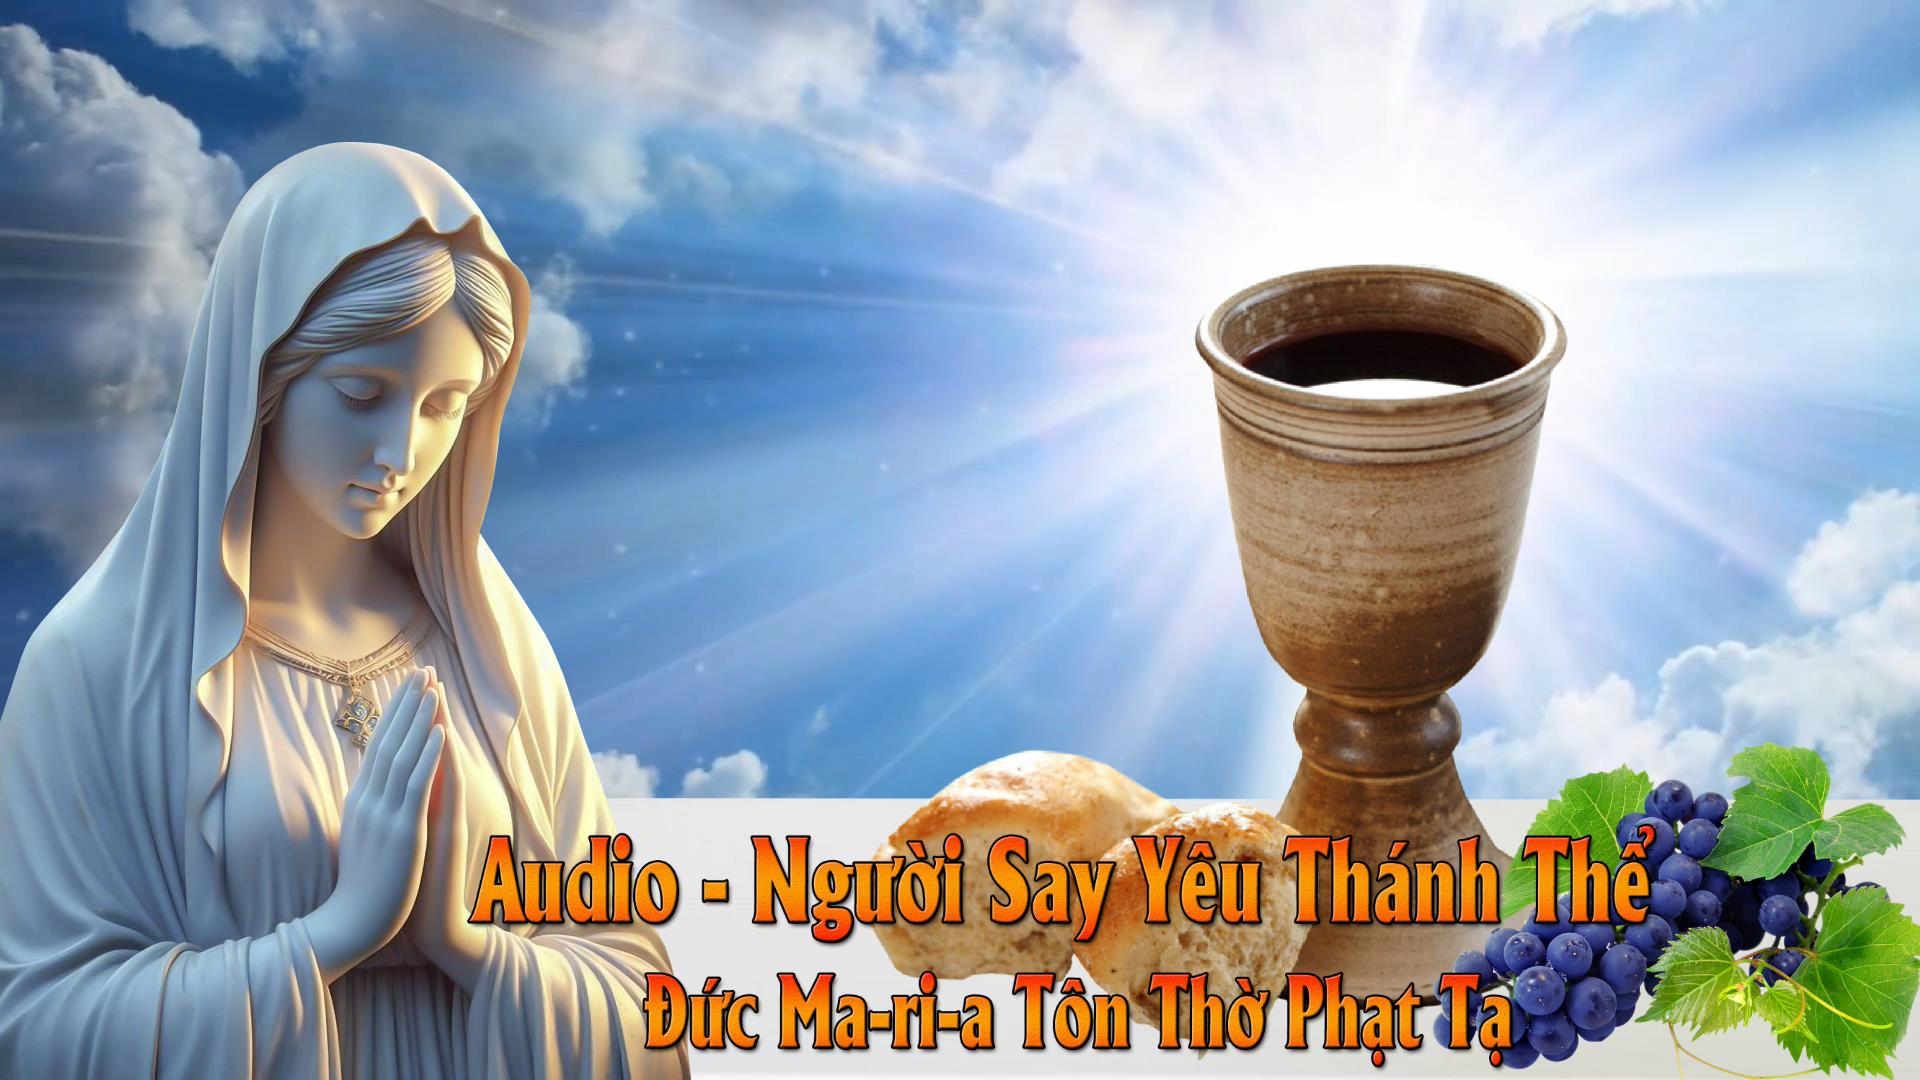 Audio - Đức Ma-ri-a Tôn Thờ Phạt Tạ